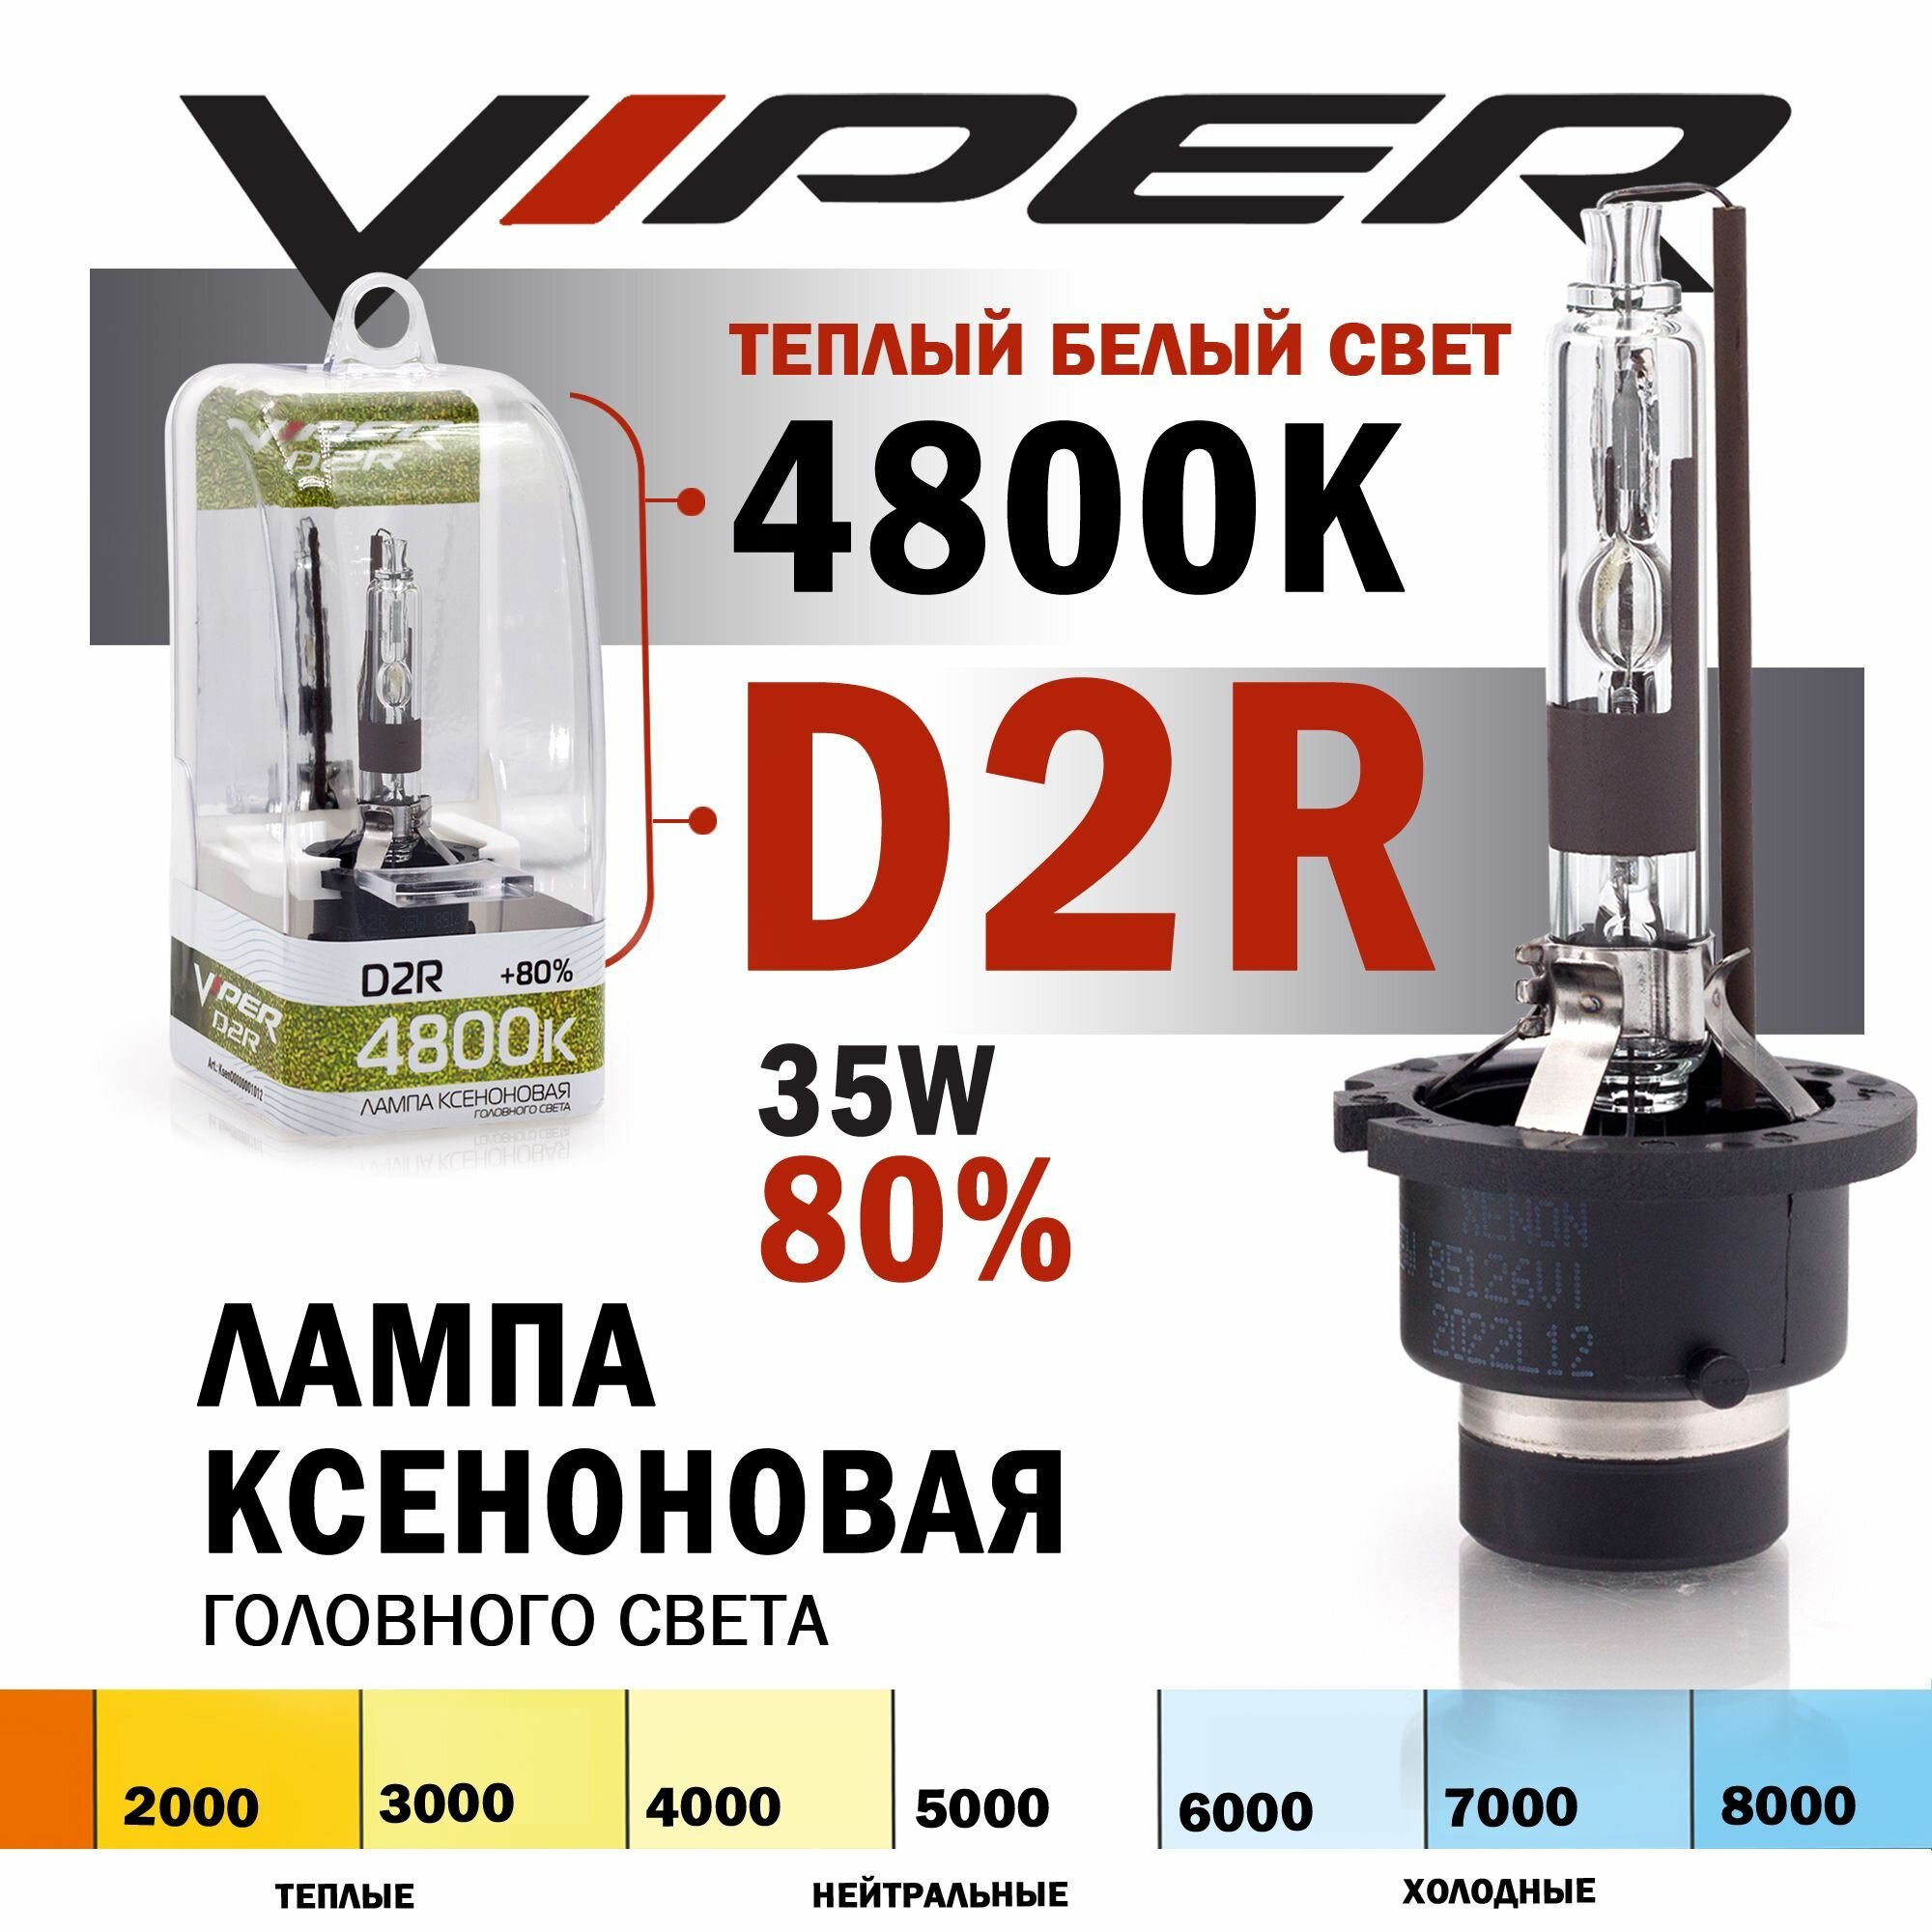 Ксеноновая лампа VIPER D2R 4800K температура света (+80%) Корея, для автомобиля штатный ксенон, питание 12V, мощность 35W, 1 штука